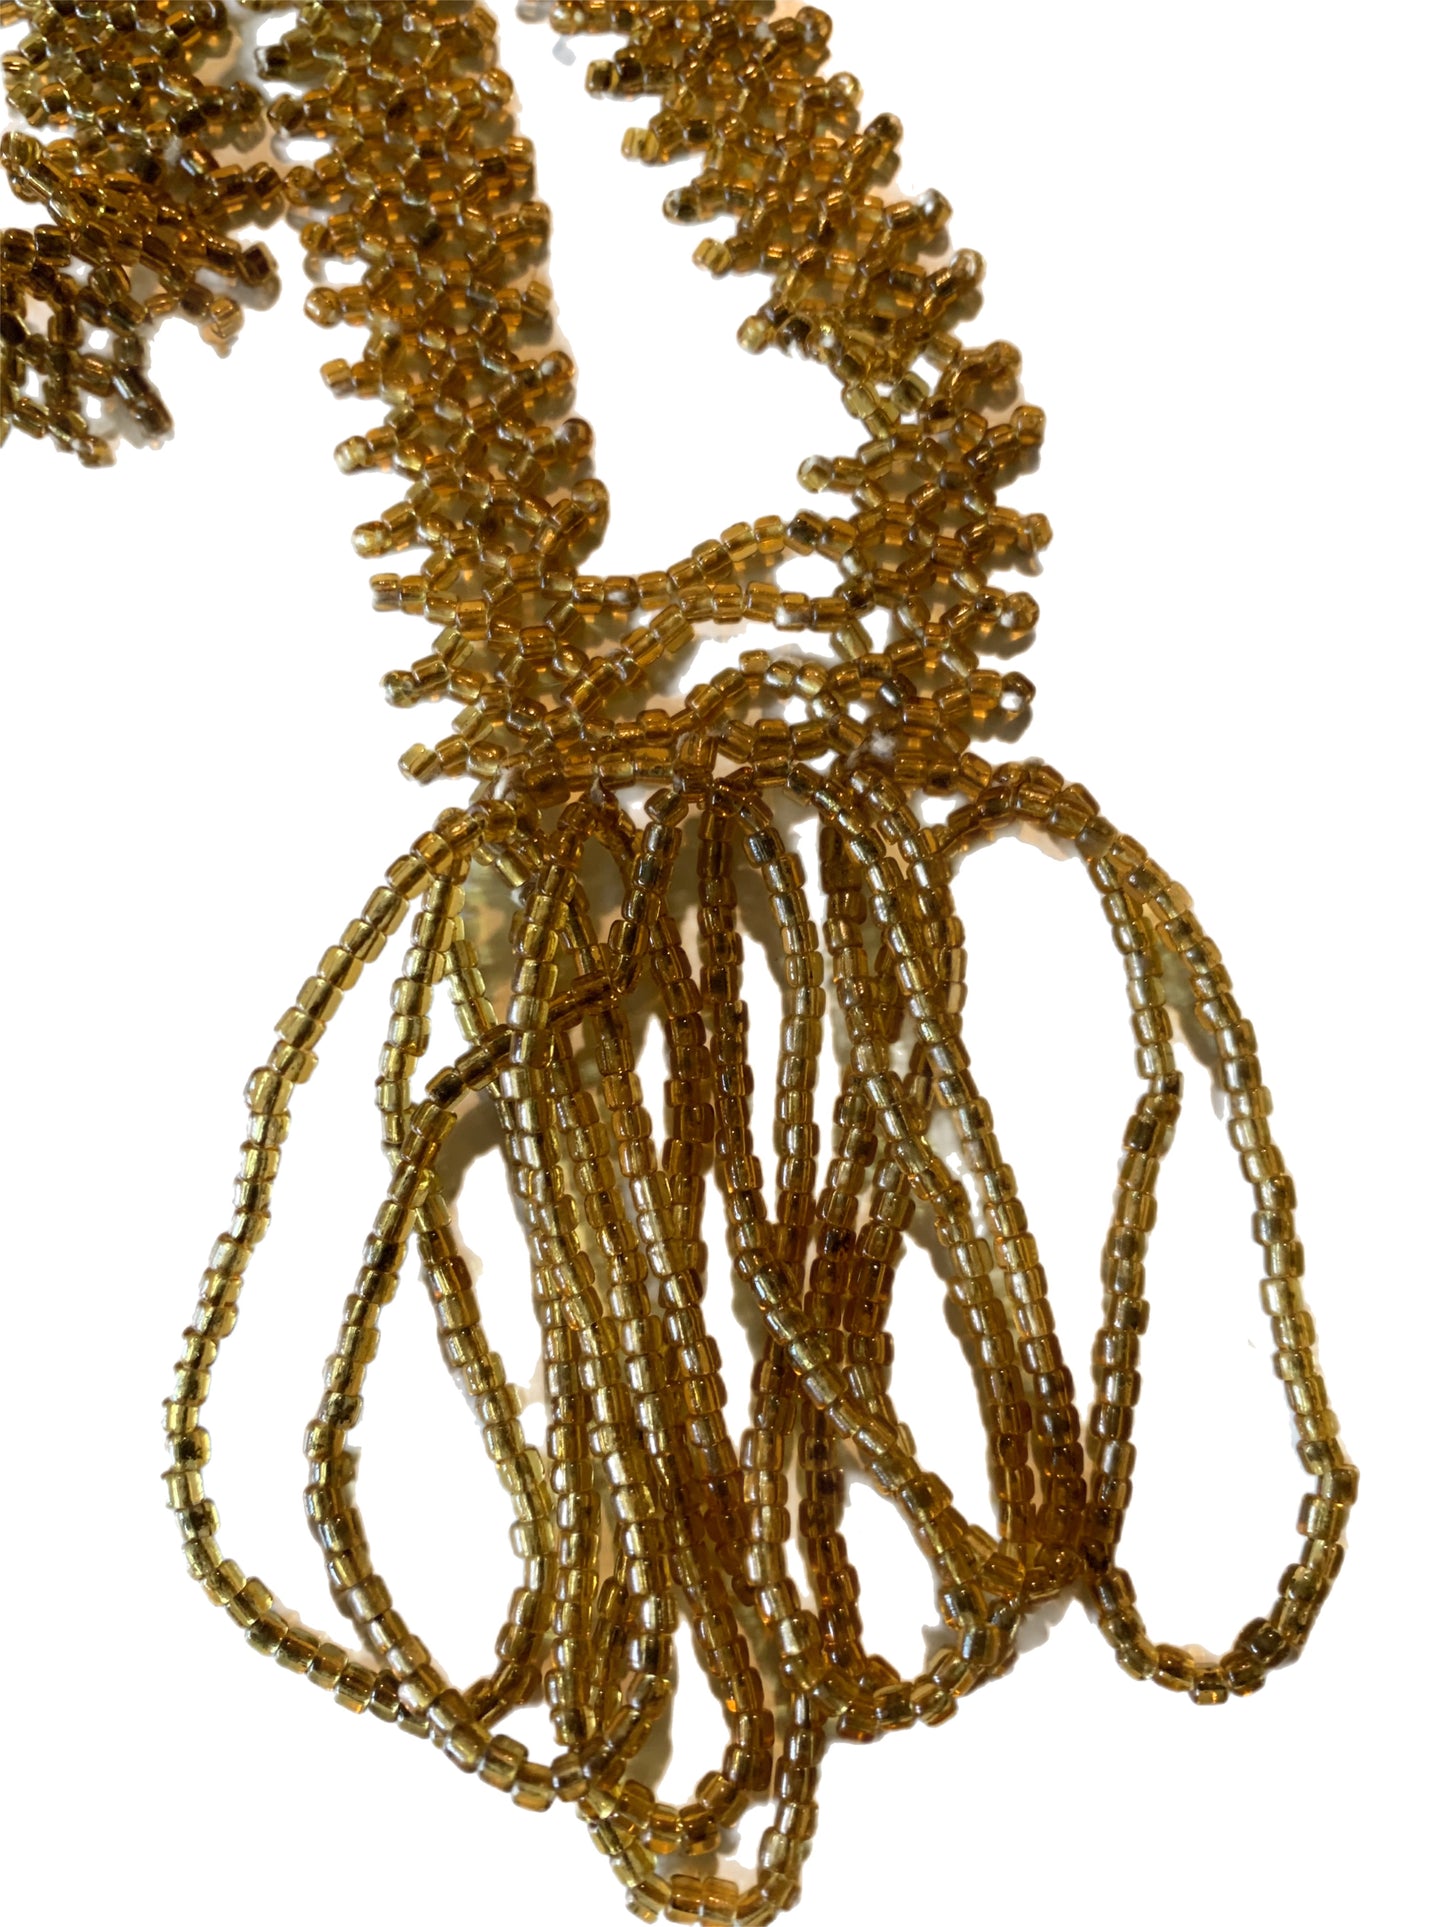 Honey Colored Glass Bead Sautoir Necklace circa 1920s